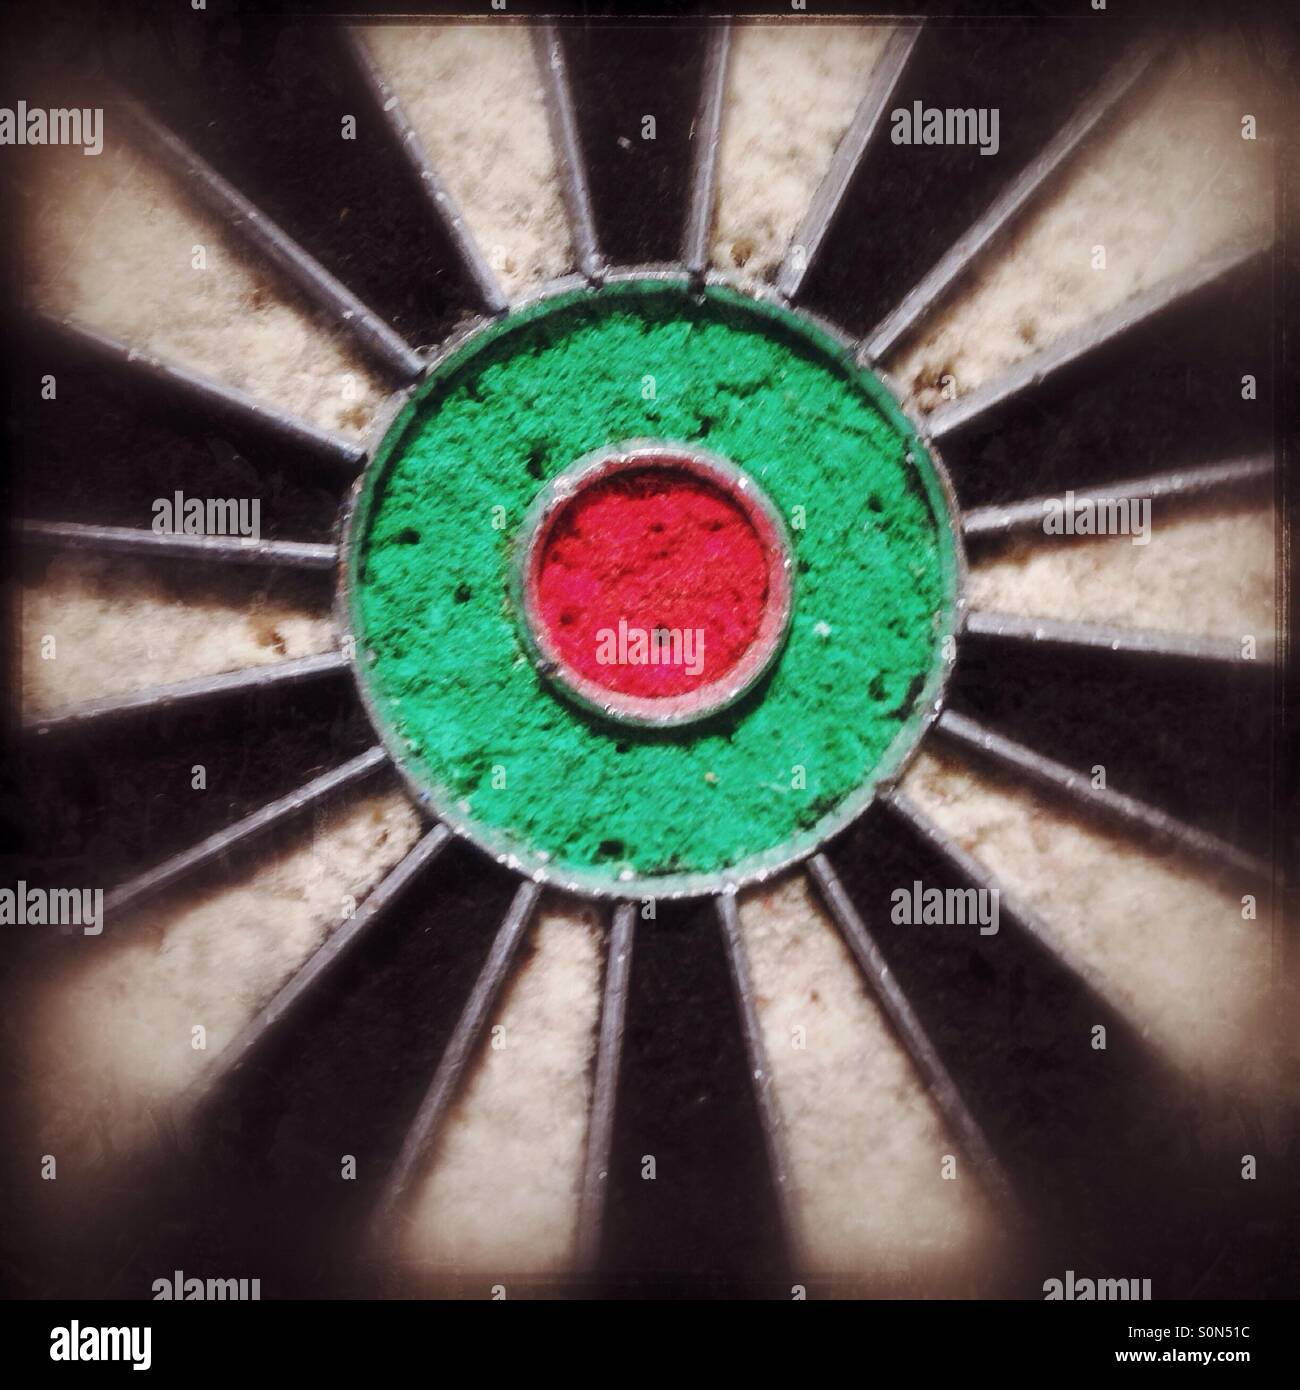 Bullseye on a dart board Stock Photo